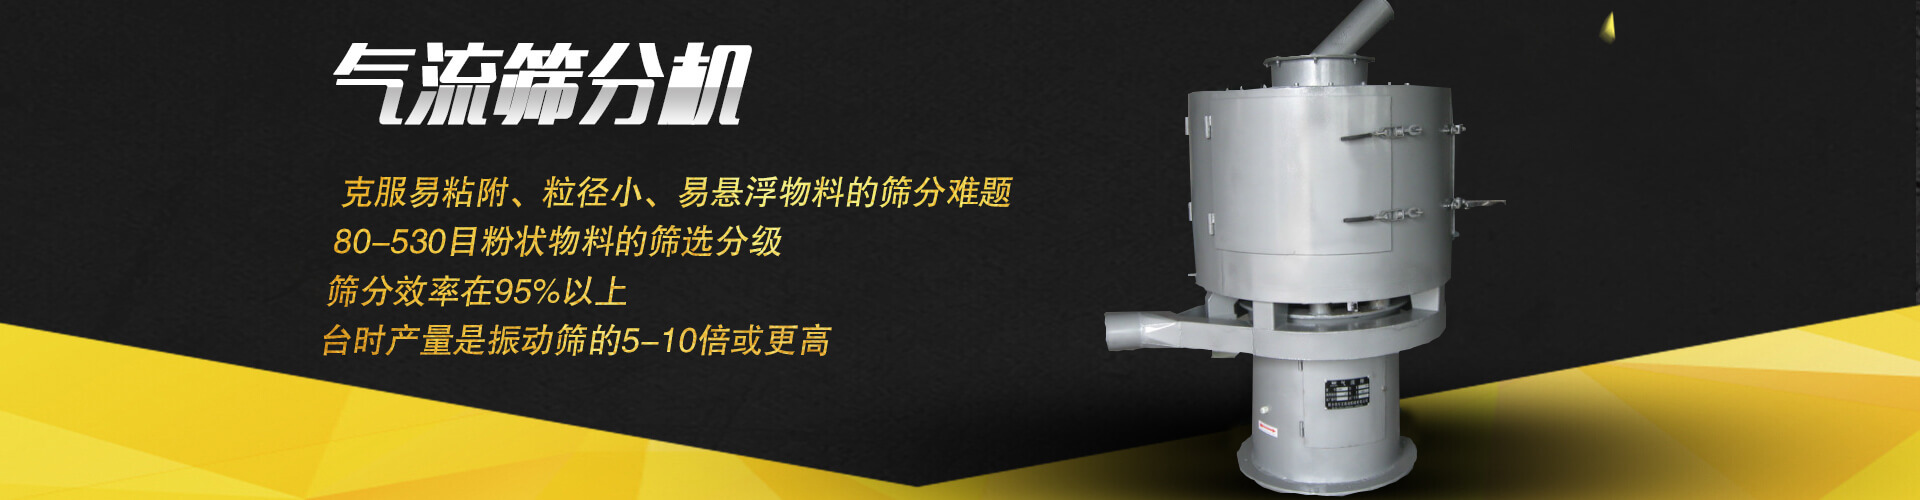 廣州南創廠家供稱重傳感器、壓力傳感器和位移等傳感器